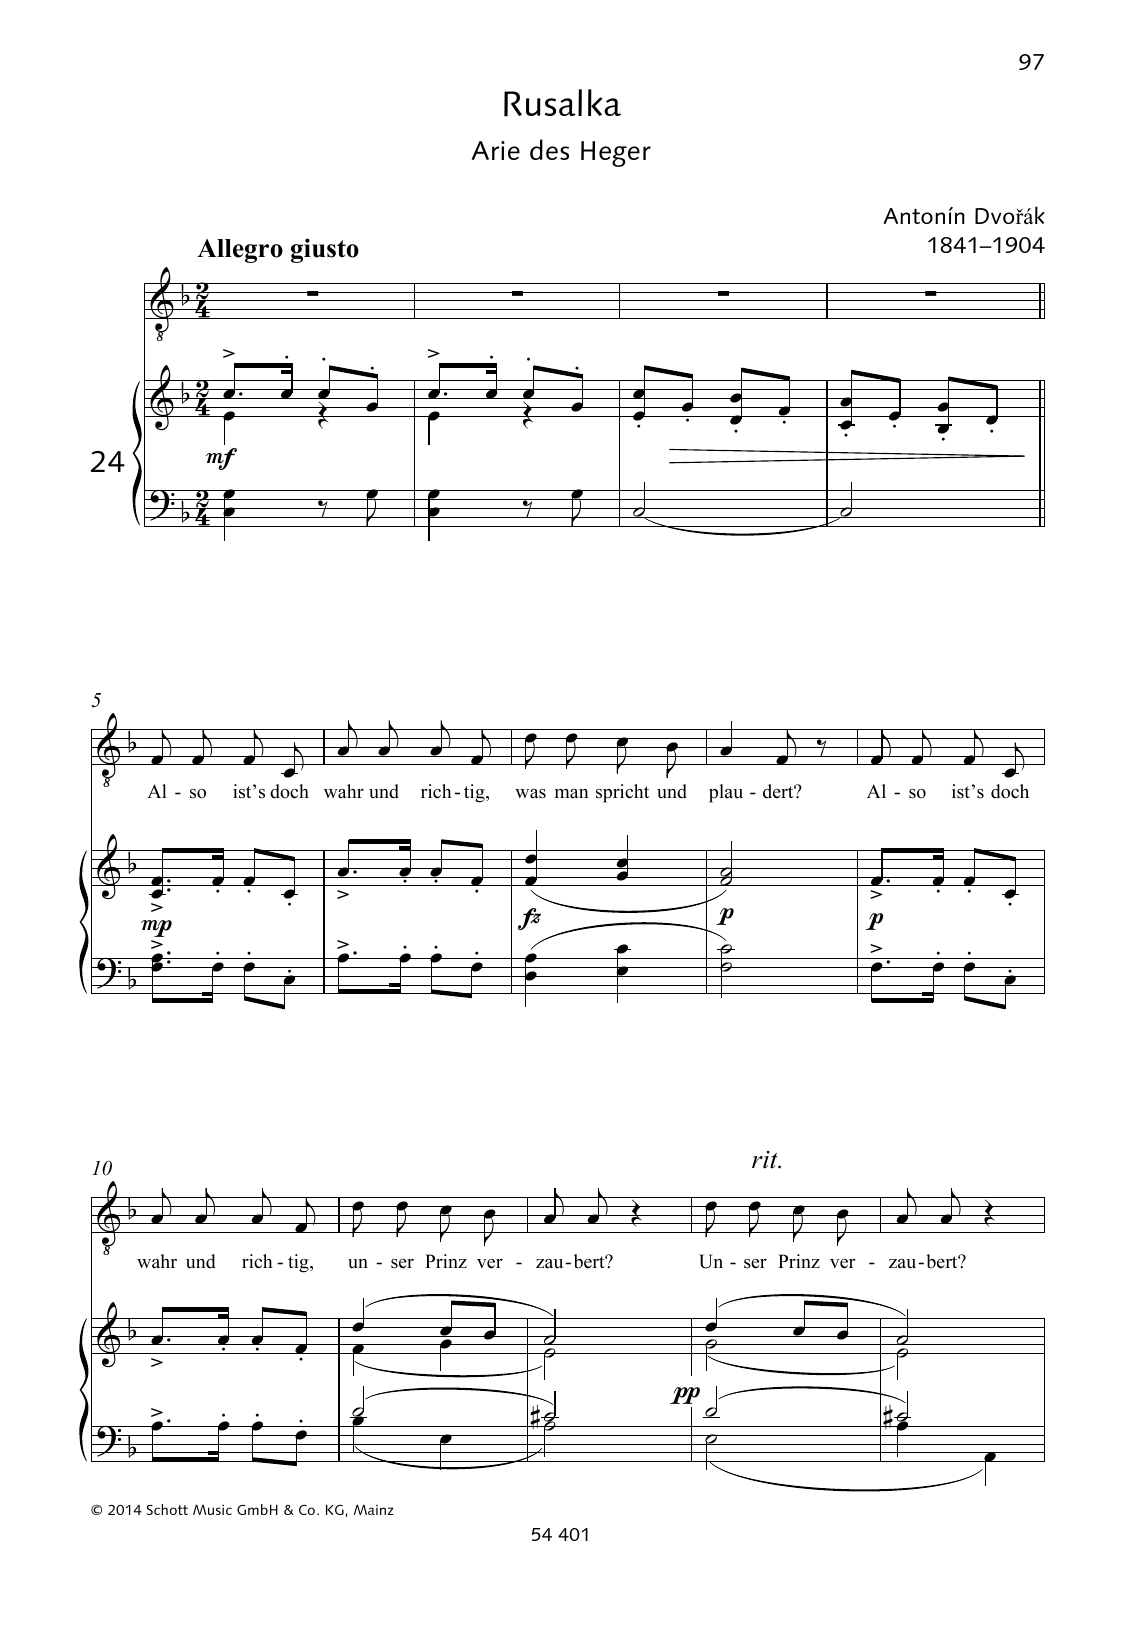 Antonín Dvorák Also ist's doch wahr und richtig sheet music notes and chords arranged for Piano & Vocal